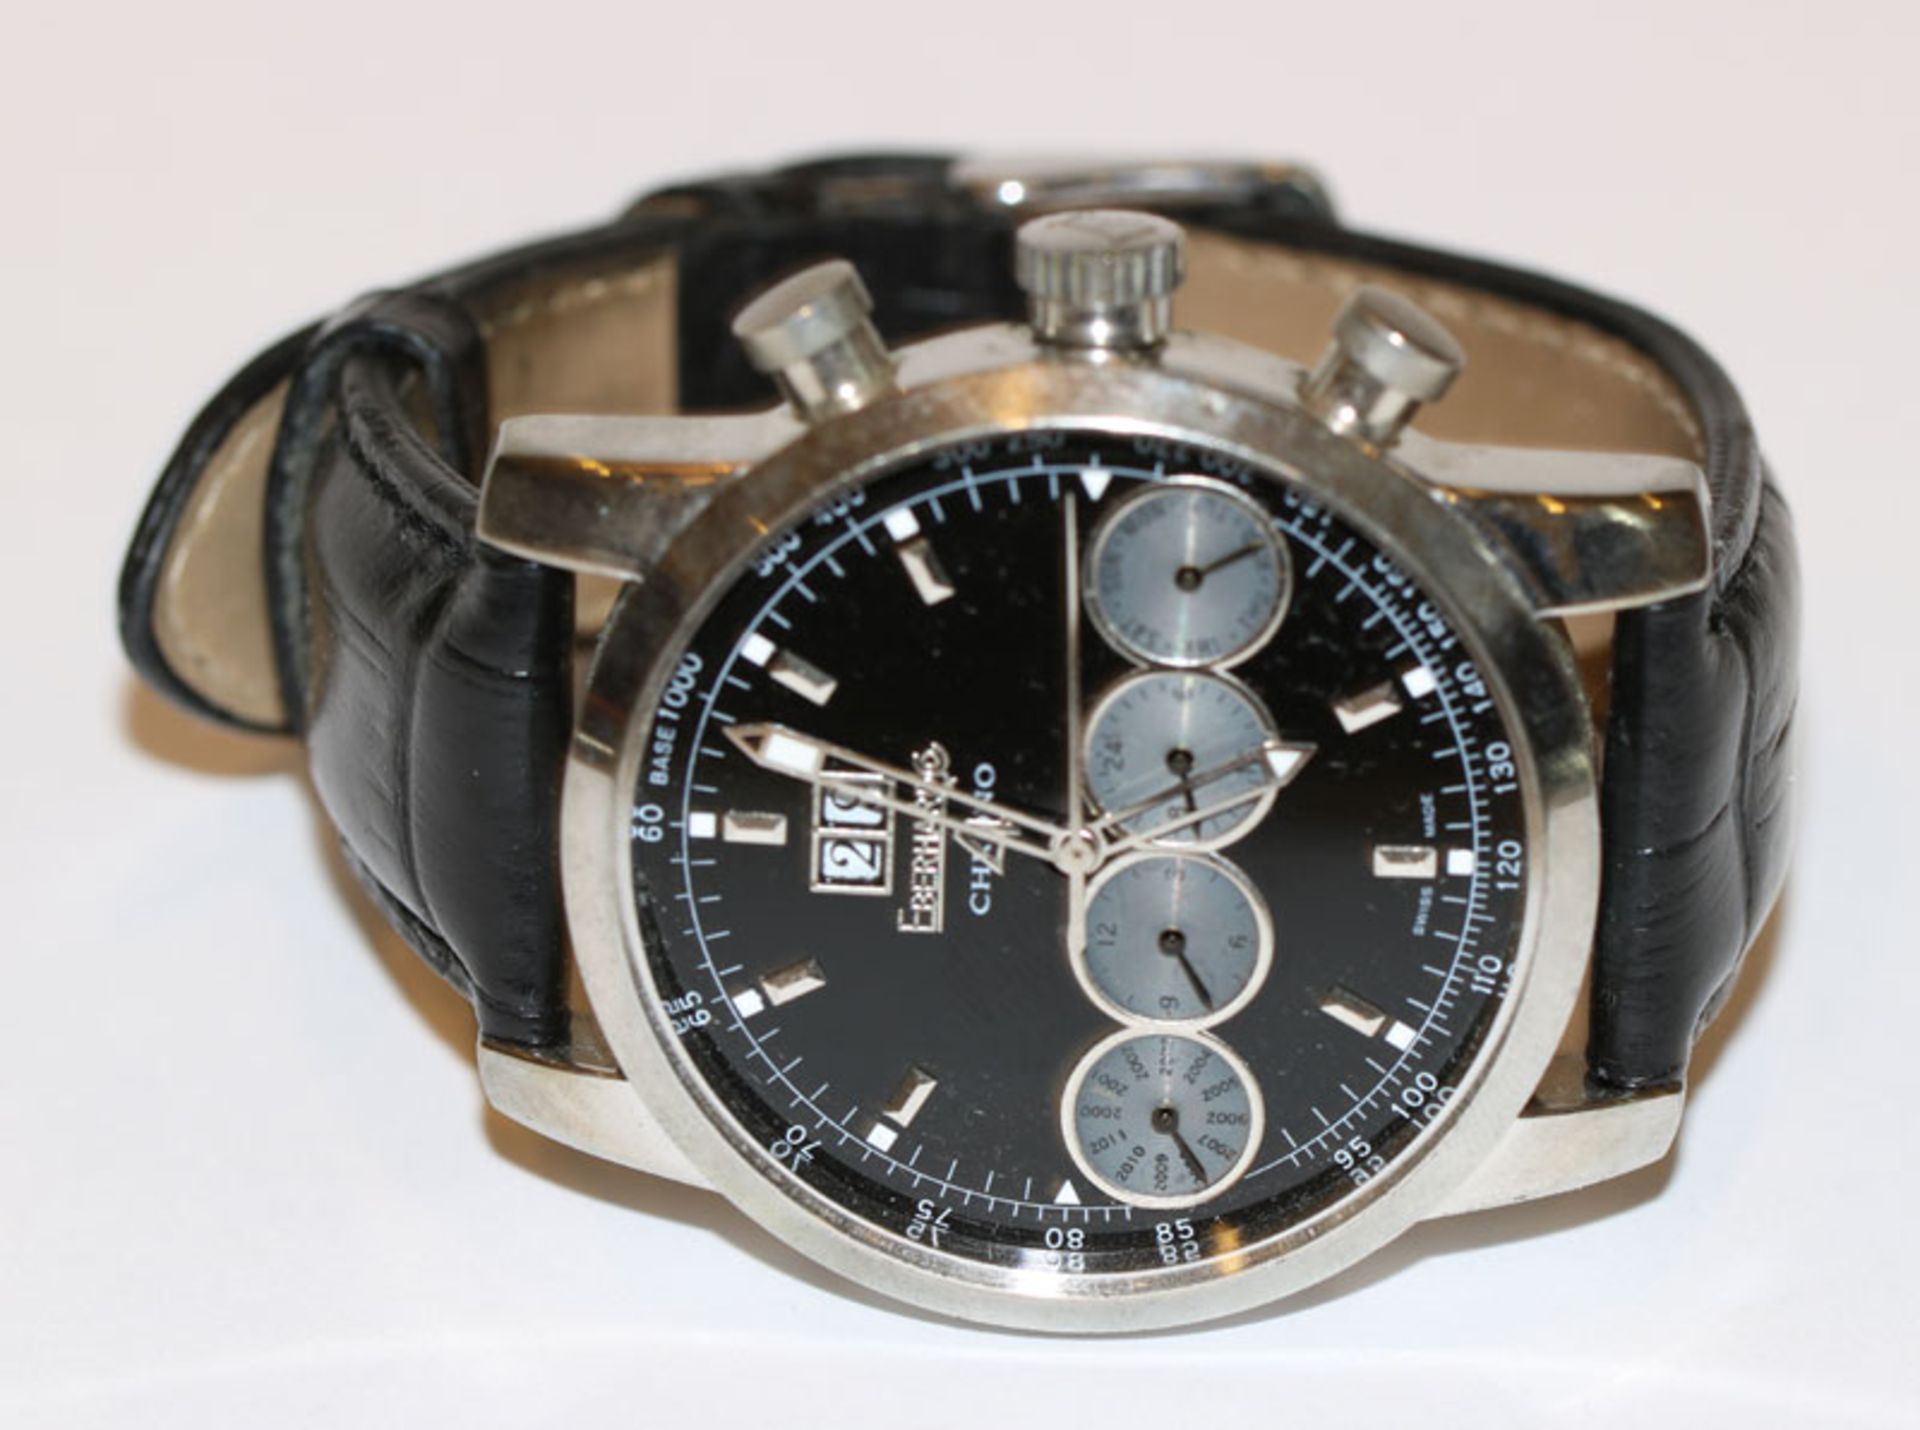 Eberhard Herren-Armbanduhr, Automatic mit Kalender, Glas muß befestigt werden, wohl gute Kopie ?, an